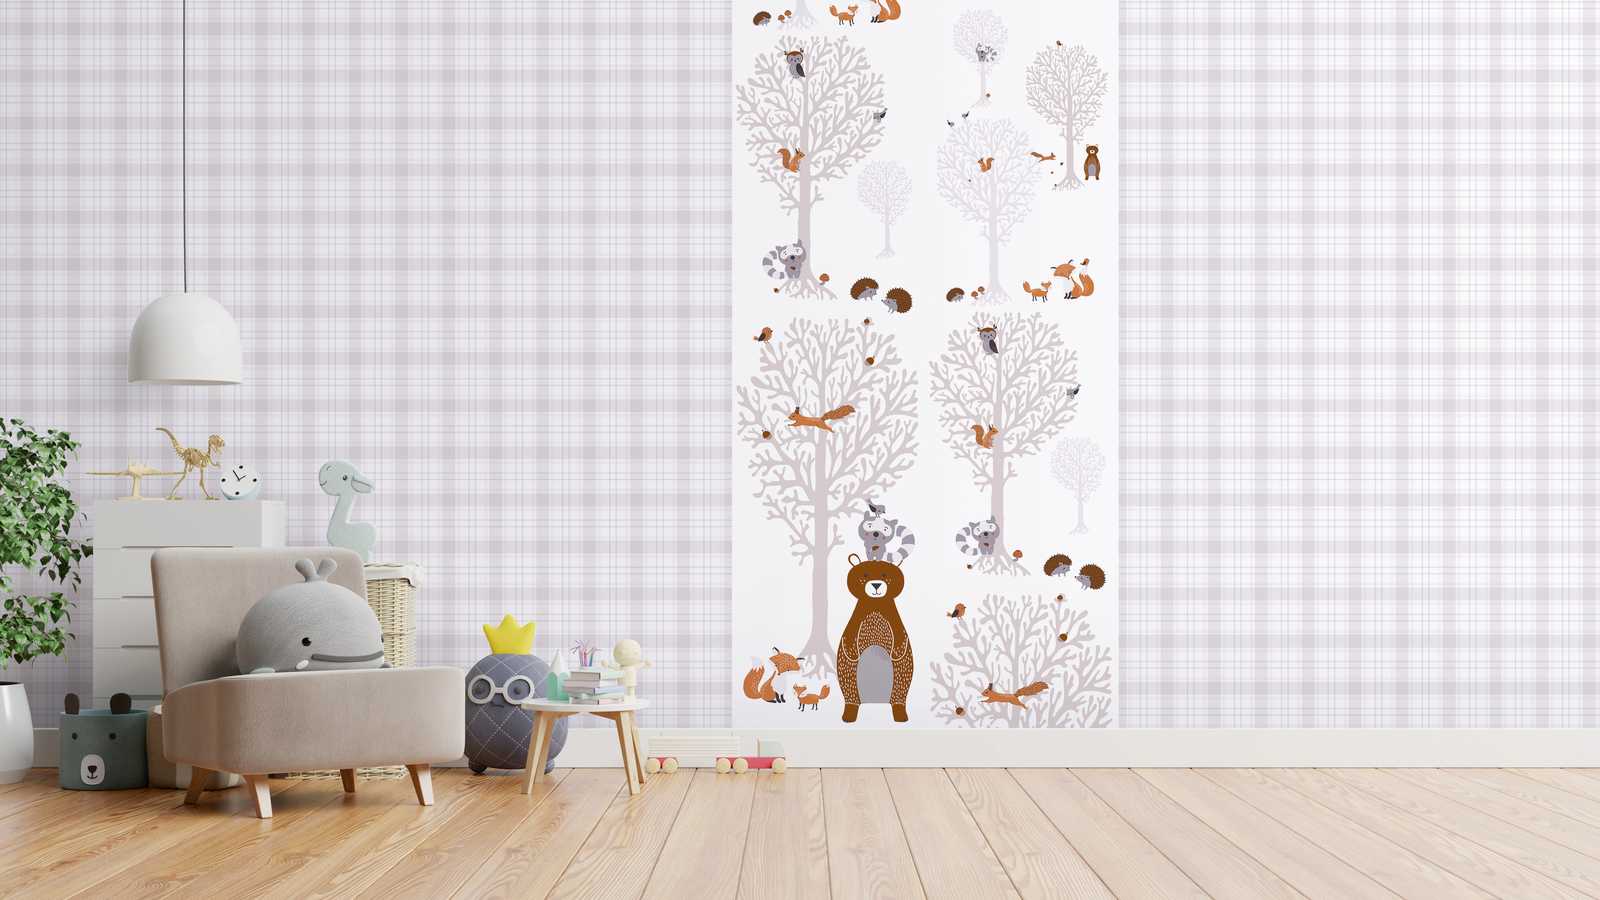             Papier peint chambre fille Animaux de la forêt - marron, gris, blanc
        